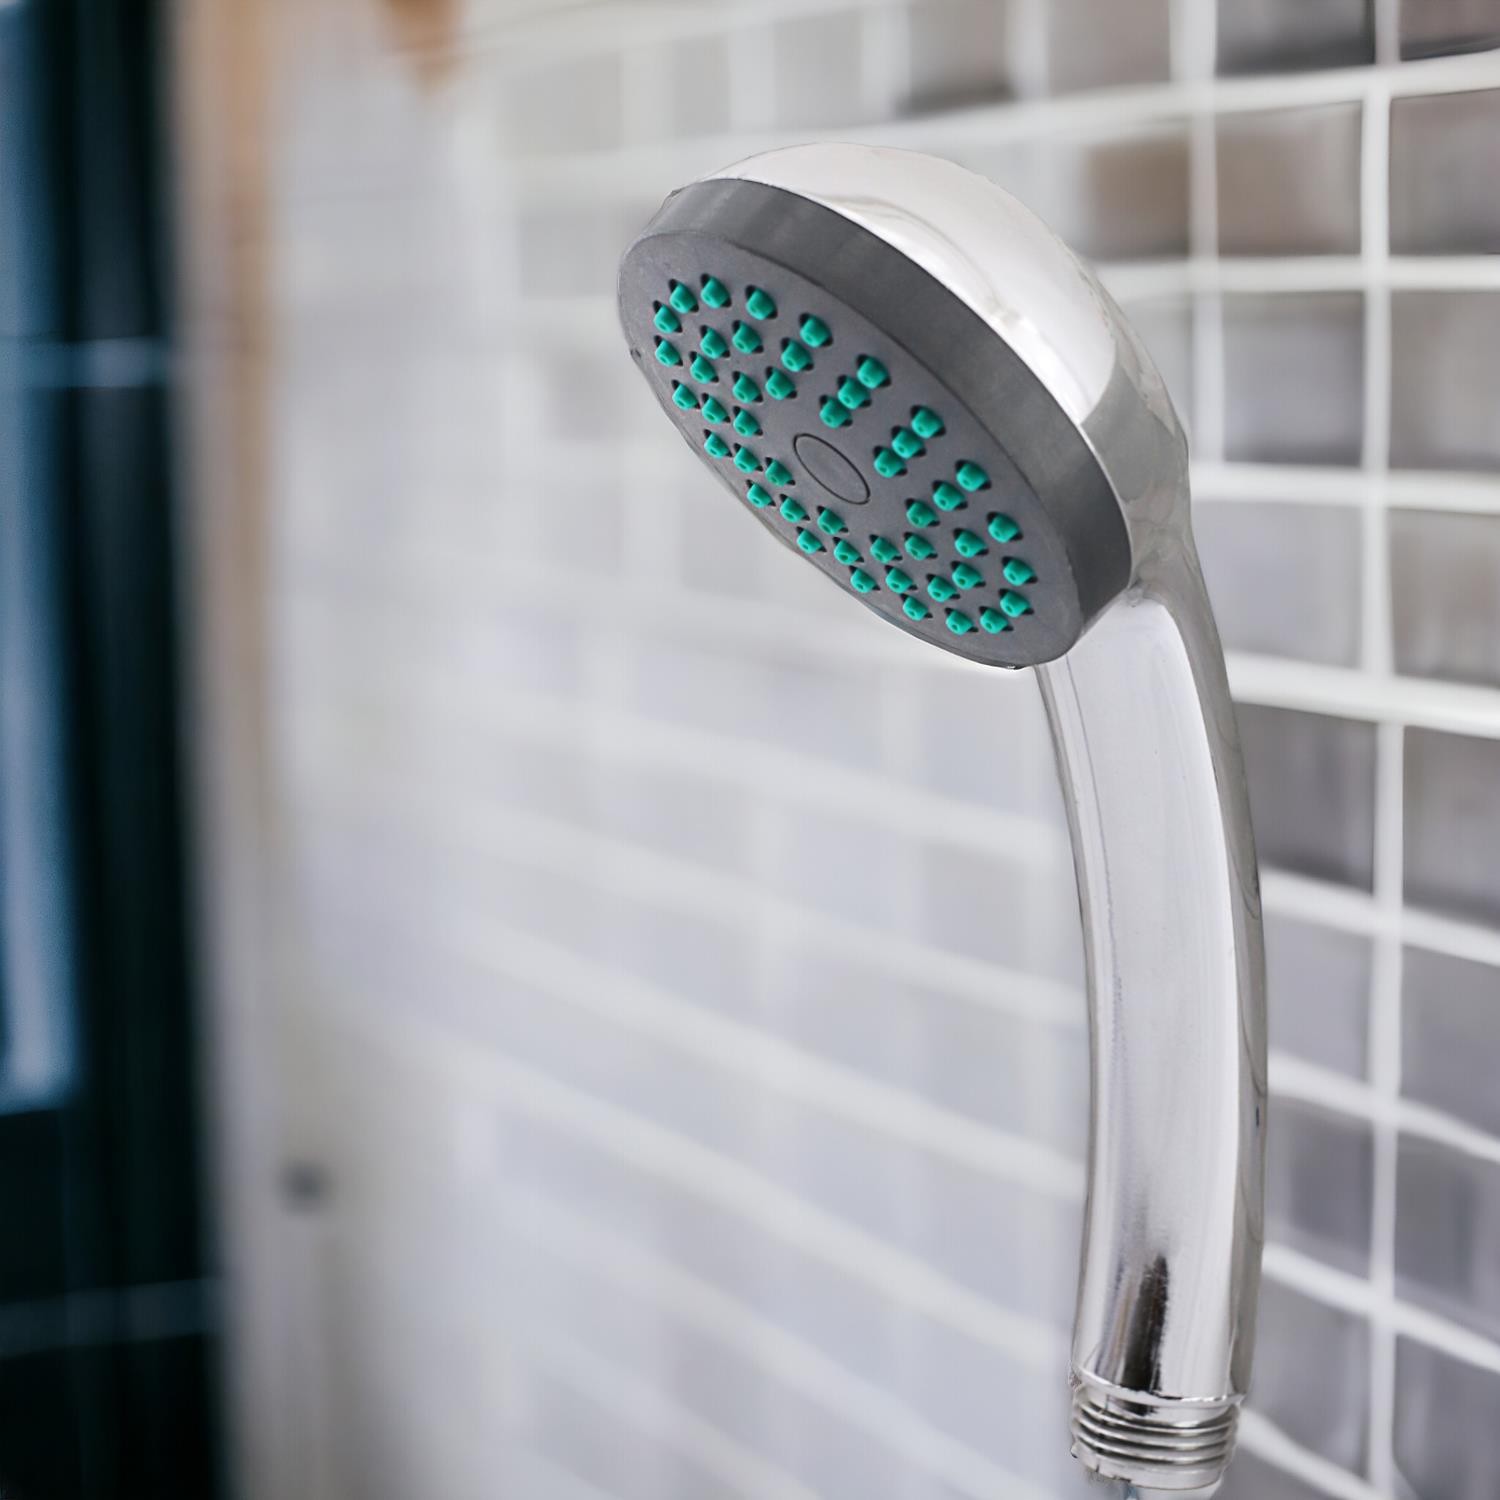 Duş Seti Fişkiye Banyo Duş Başlığı Set Fiskiyesi Telefonu Yuvarlak Klasik Başlık Metal Hortum